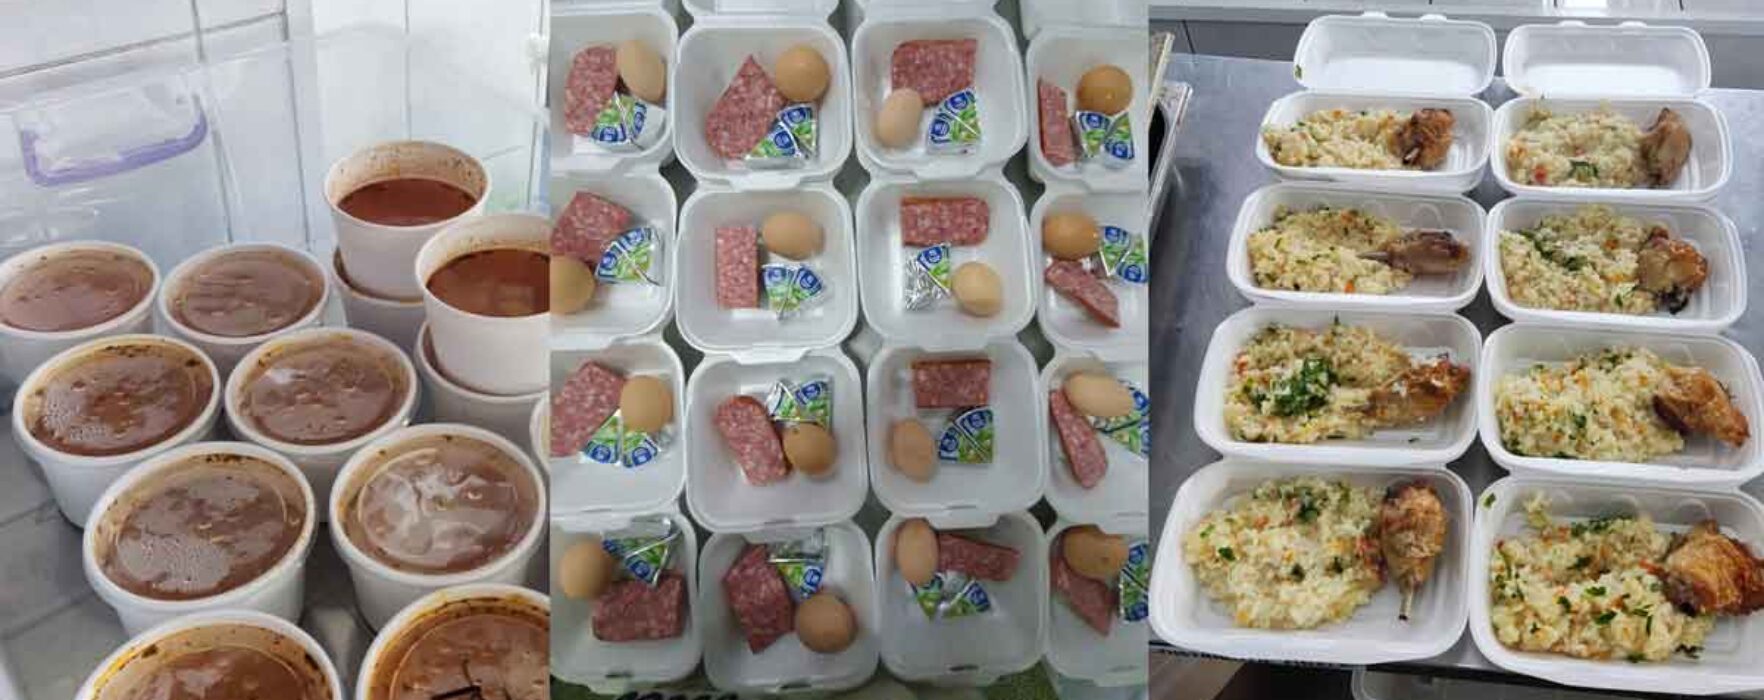 Condiţii mult îmbunătăţite de servire a mesei pentru pacienţii Spitalului Judeţean Târgovişte